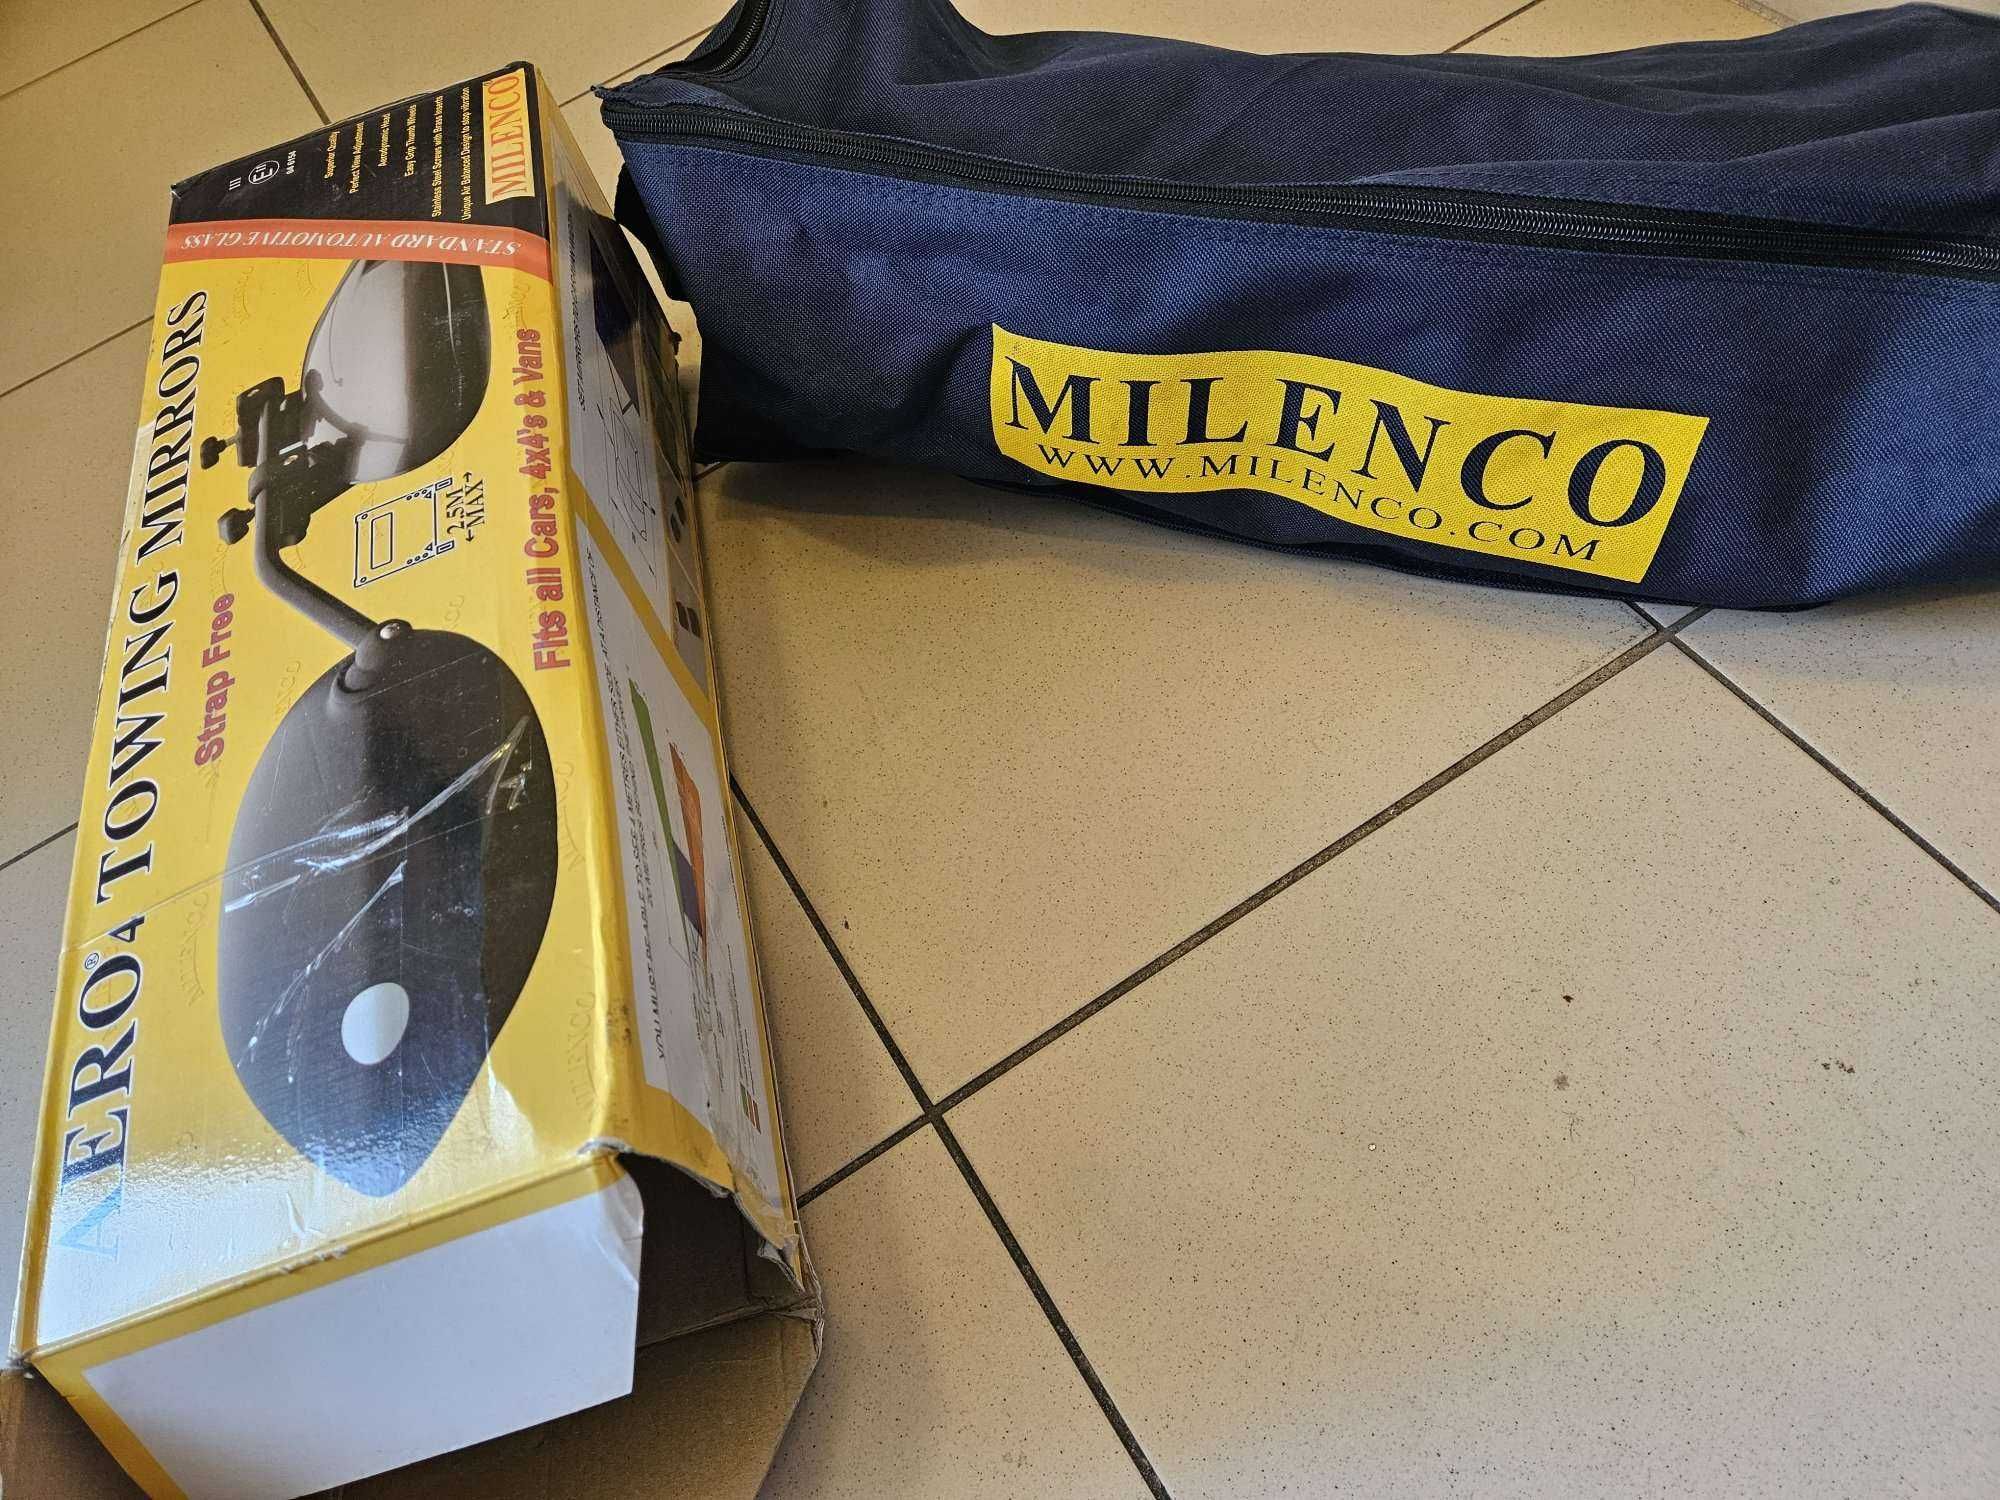 Universale Milenco suplimentare convexe oglinzi Aero 4 rulota camping